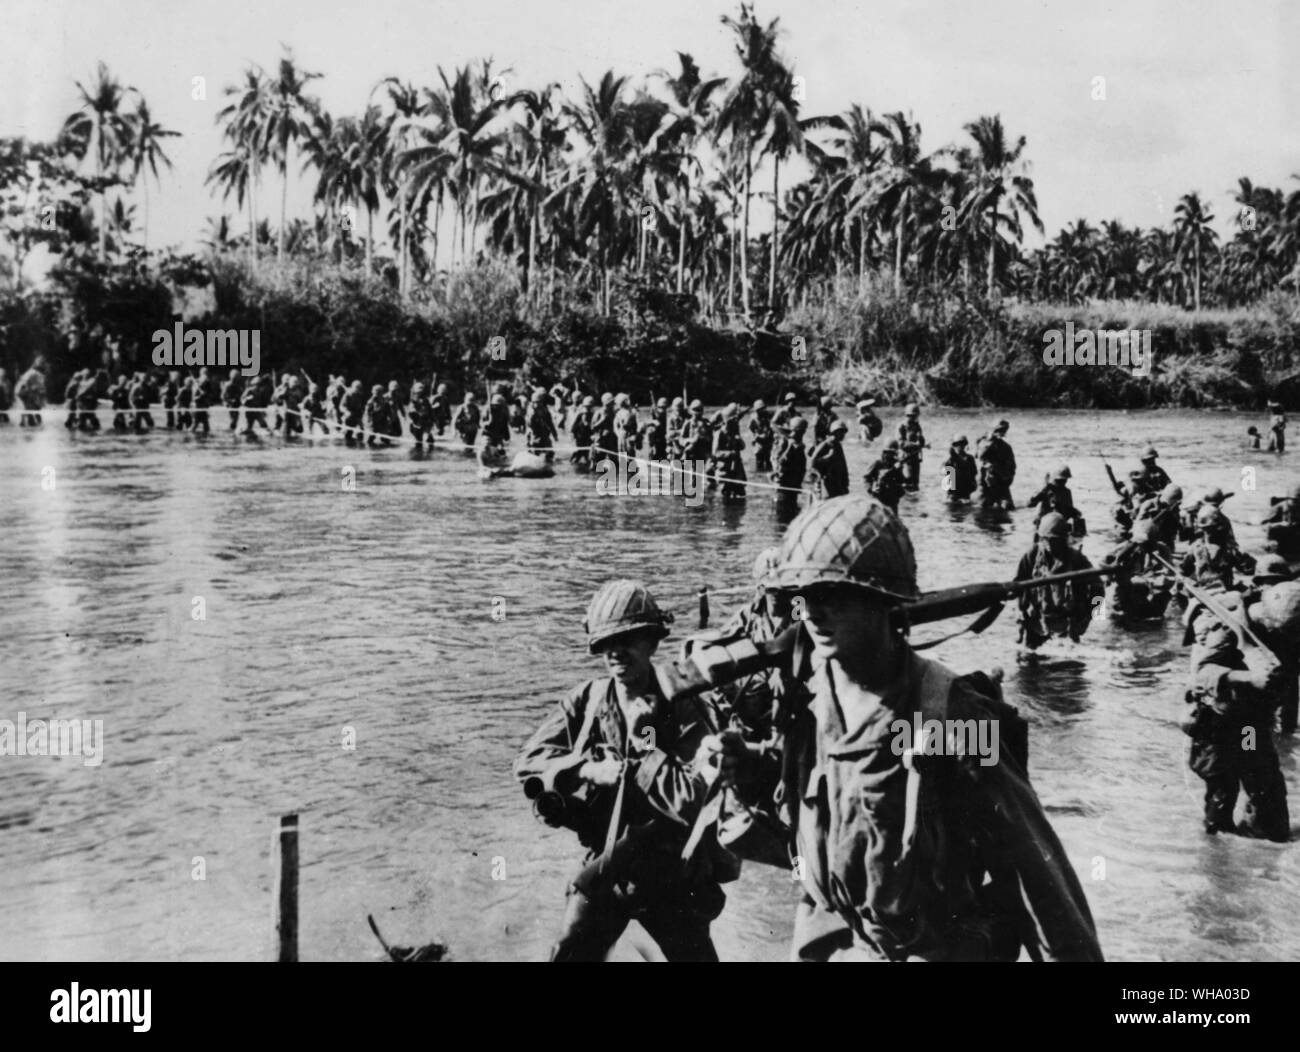 Les troupes américaines sur l'île de Leyte. À l'aide d'une corde comme un guide d'une rive à l'autre, les soldats de la 7e Division US dans l'ensemble de fichiers l'eau peu profonde de la rivière, l'île de Leyte Marahang comme ils l'avance vers les positions japonaises dans les collines près de Santa Ana. Malgré les rivières, la perfide et temps partiel comme chauffeur personnel forces étaient des progrès lents mais constants contre les unités ennemies renforcées dans la région. Banque D'Images